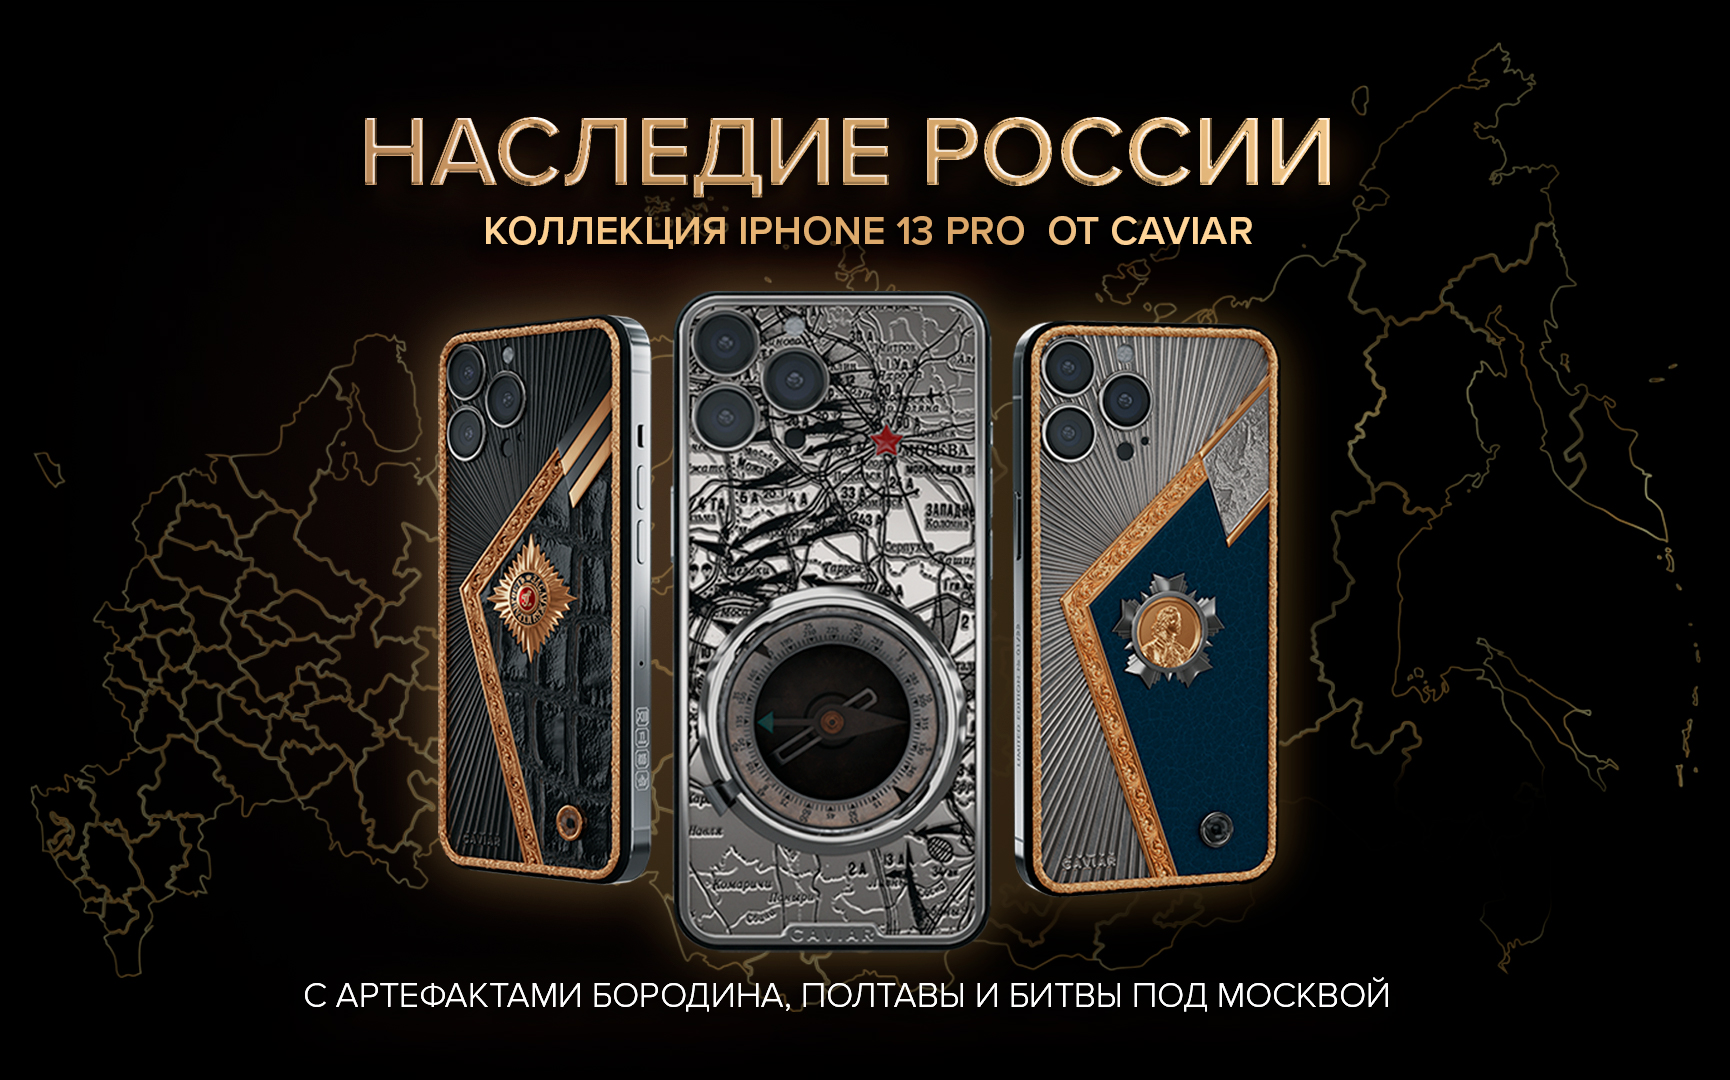 Caviar представил iPhone 13 Pro с работающим компасом времен Битвы под Москвой 1941 года